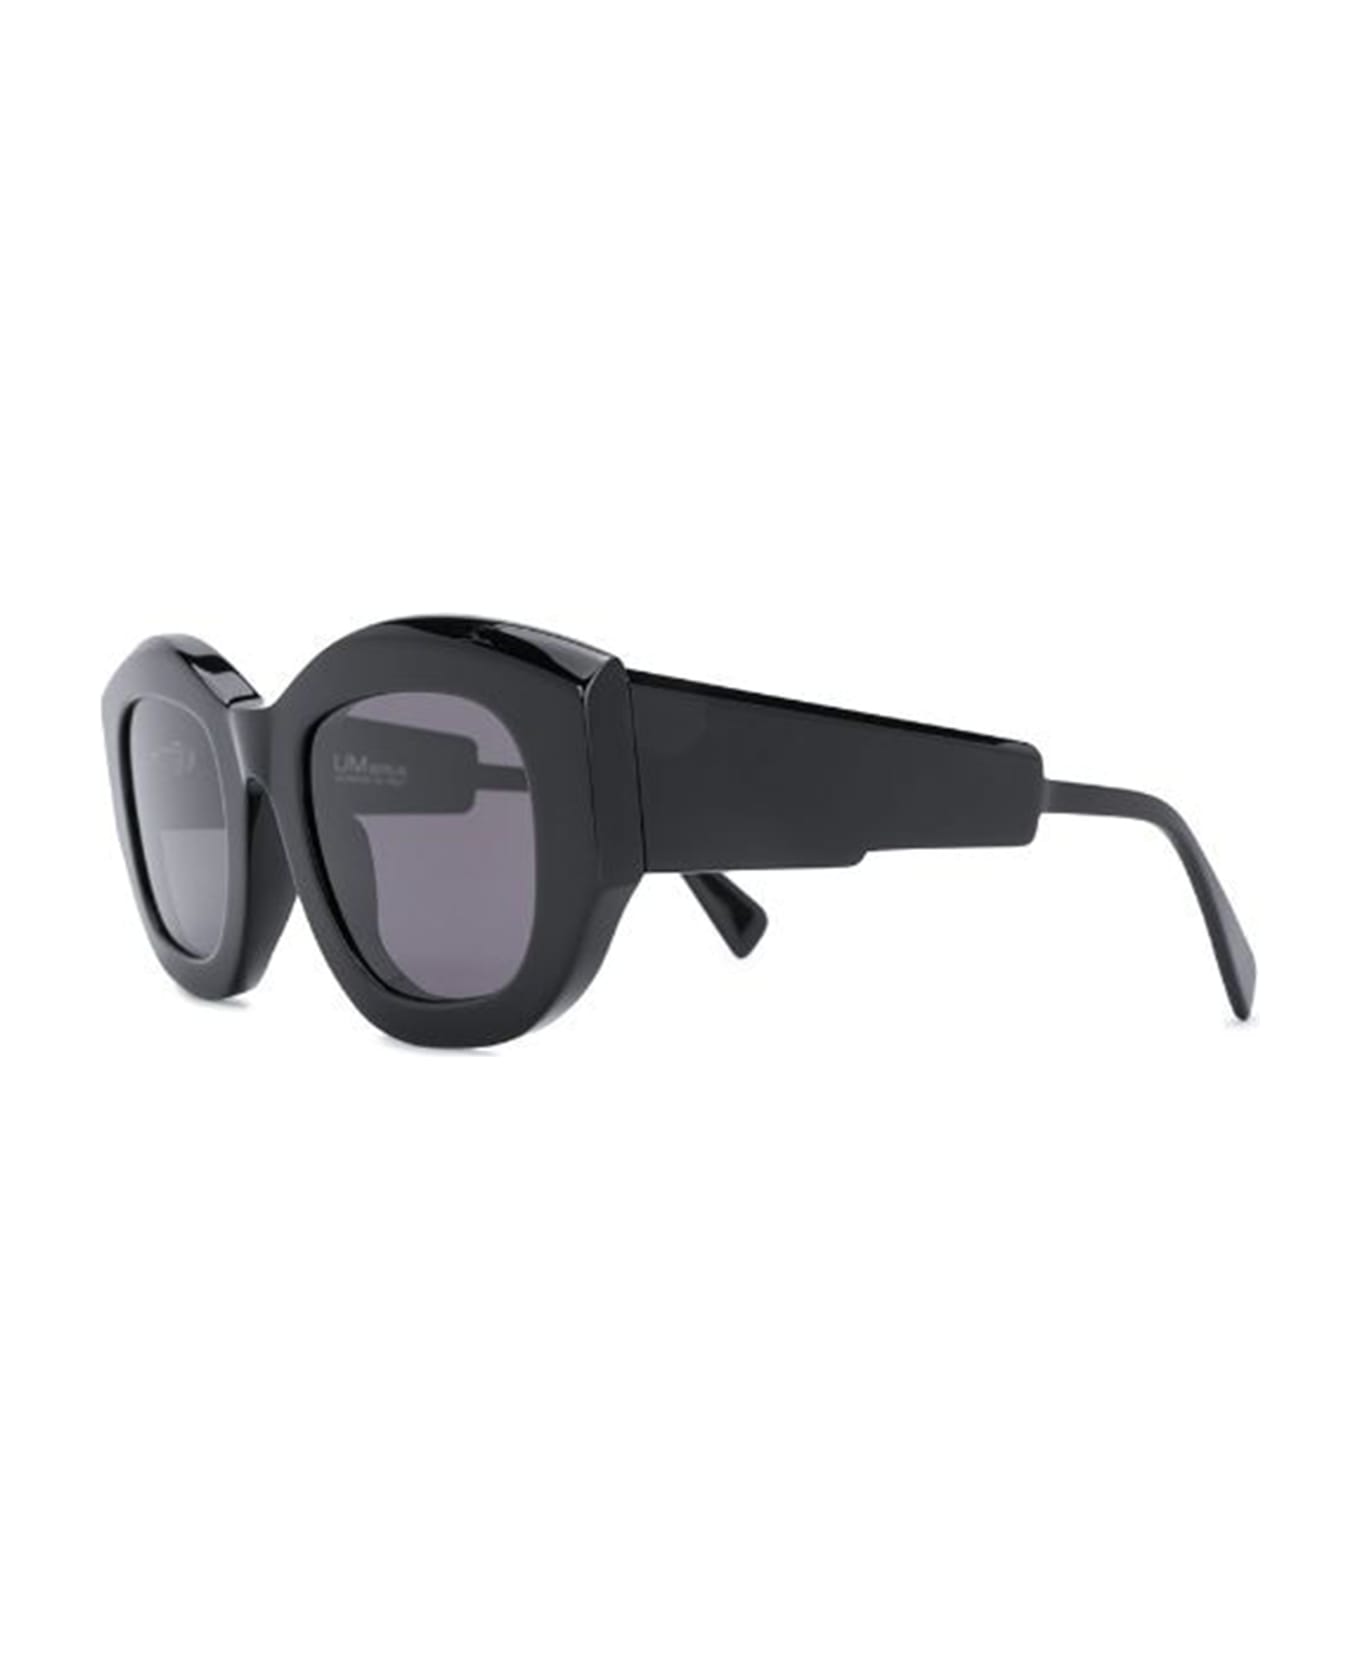 Kuboraum B5 Sunglasses - Gray